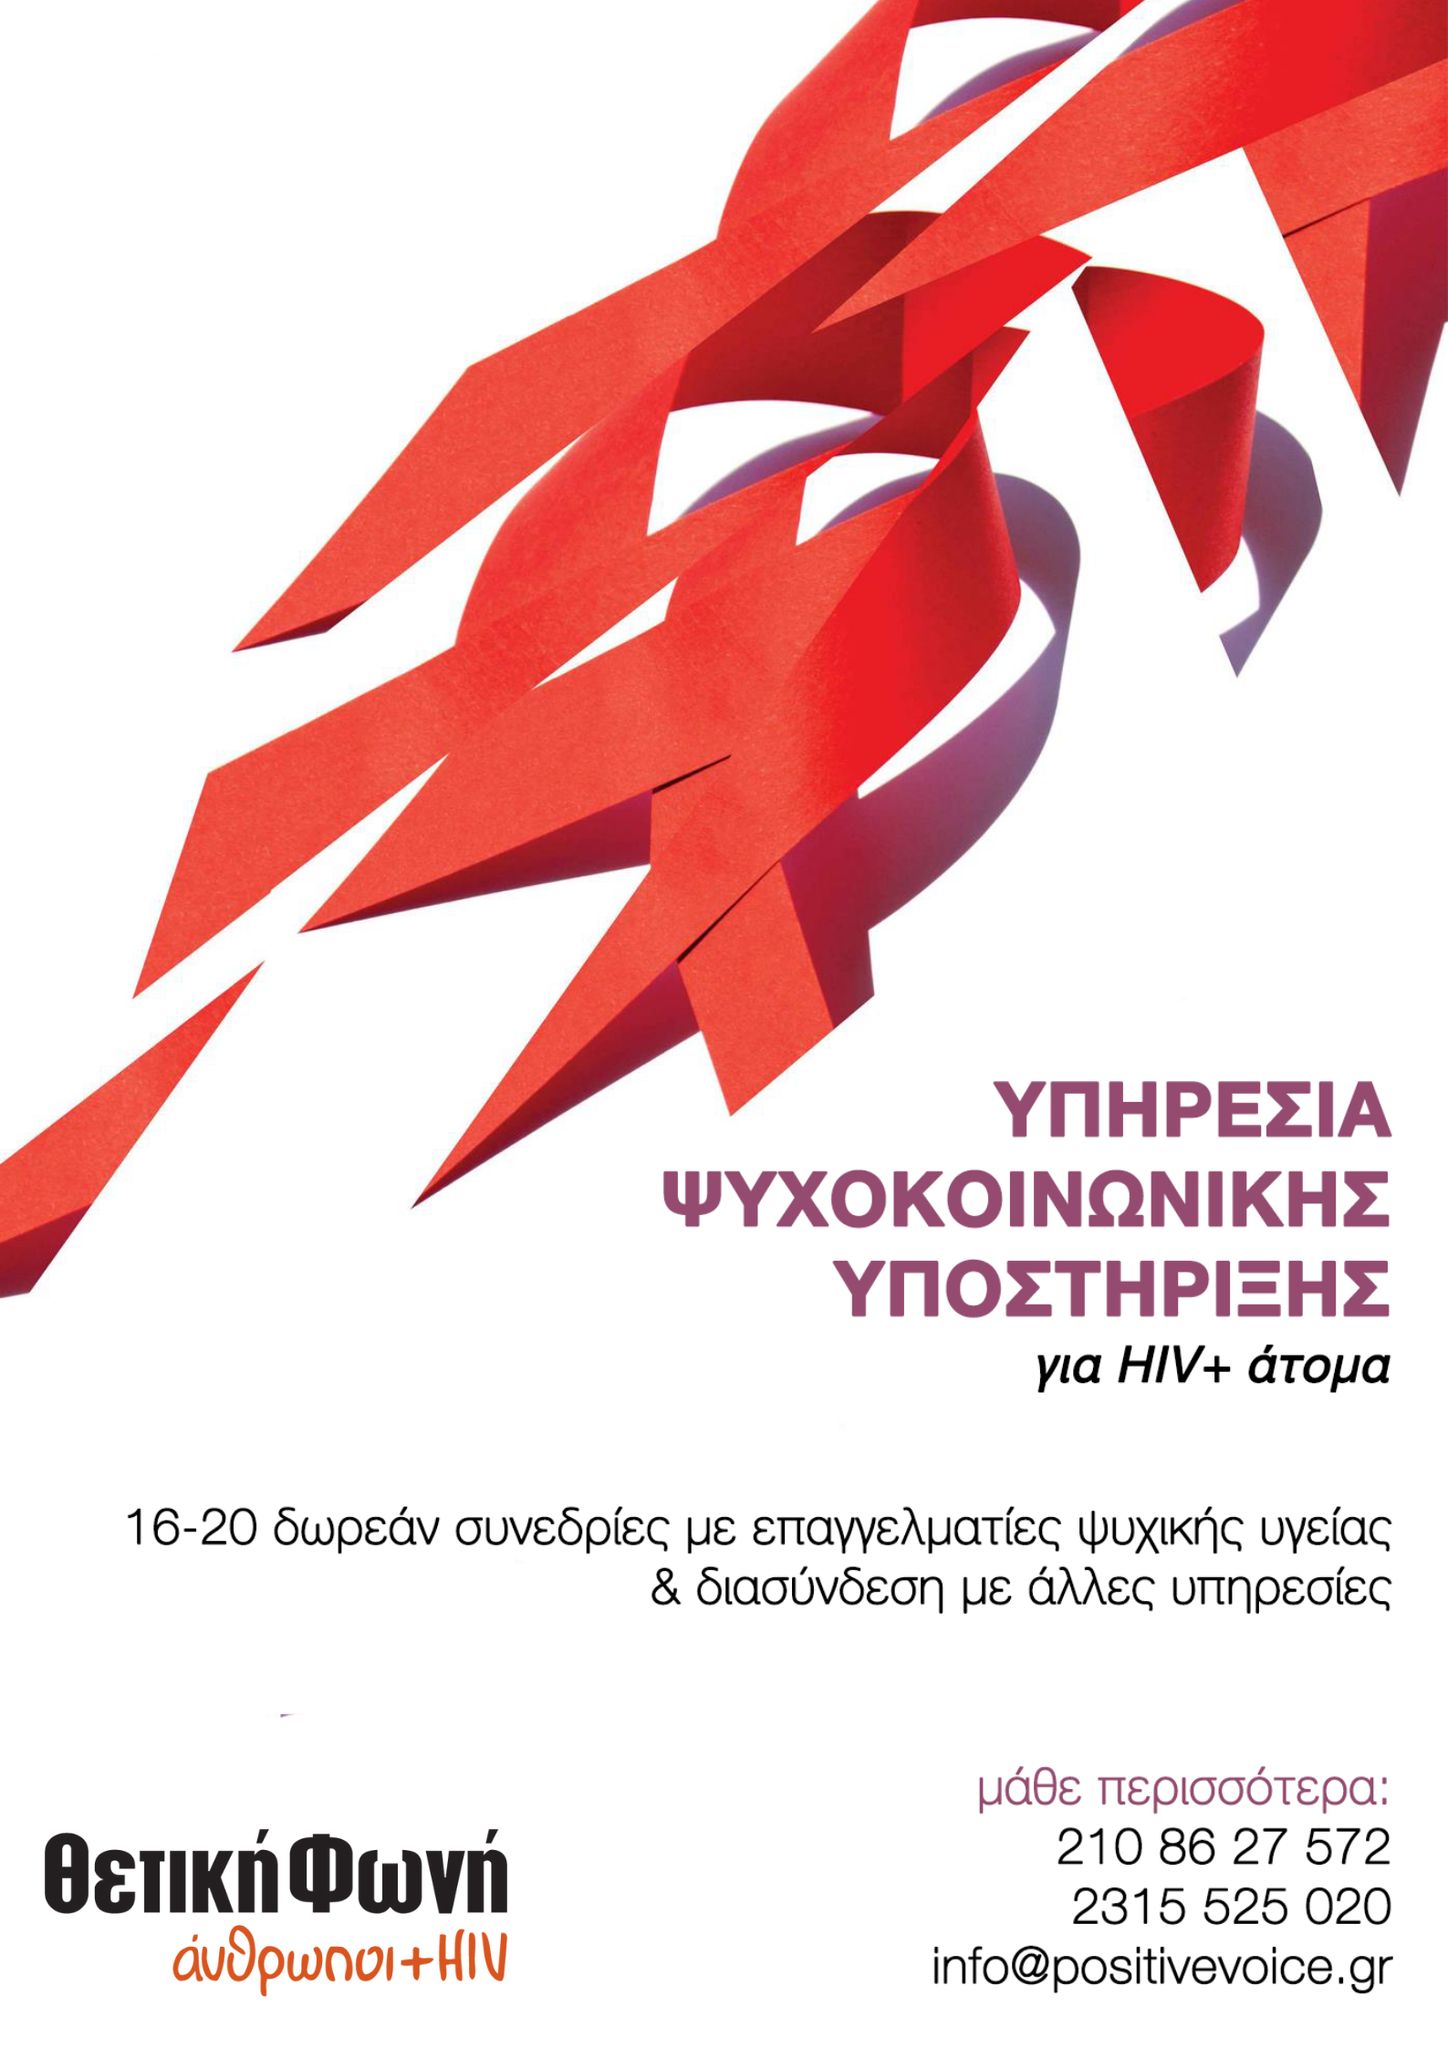 Εικόνα για το άρθρο “Νέα, δωρεάν υπηρεσία Ψυχοκοινωνικής Υποστήριξης για άτομα που ζουν με HIV+”